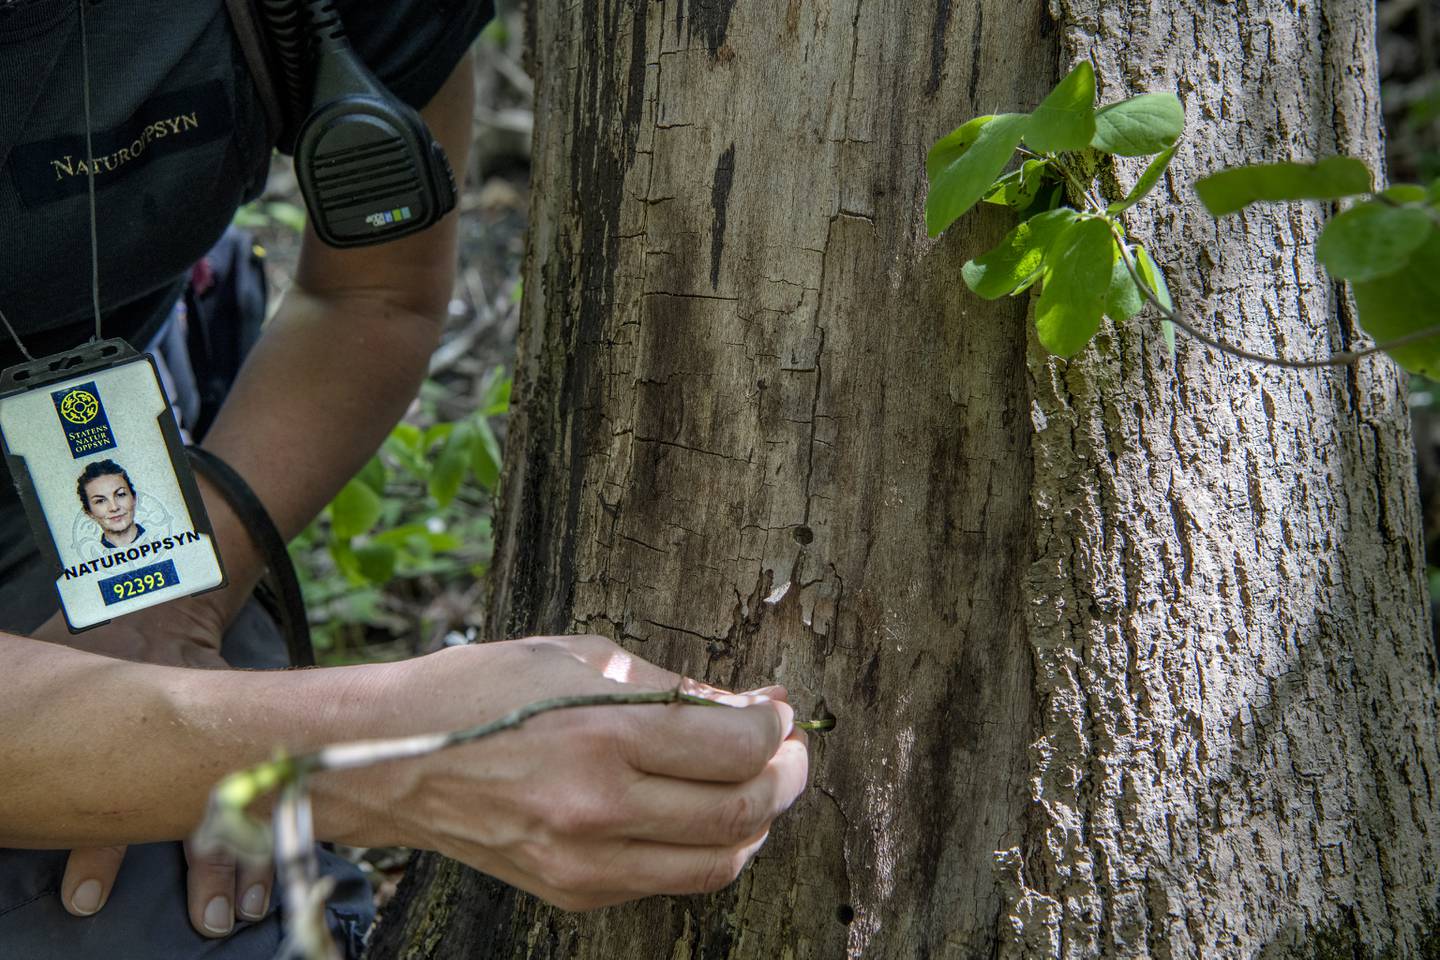 Borehullene i trærne som ble forgiftet, er små og knapt nok synlige selv på kort avstand, men Statens naturoppsyn fant dem like fullt.